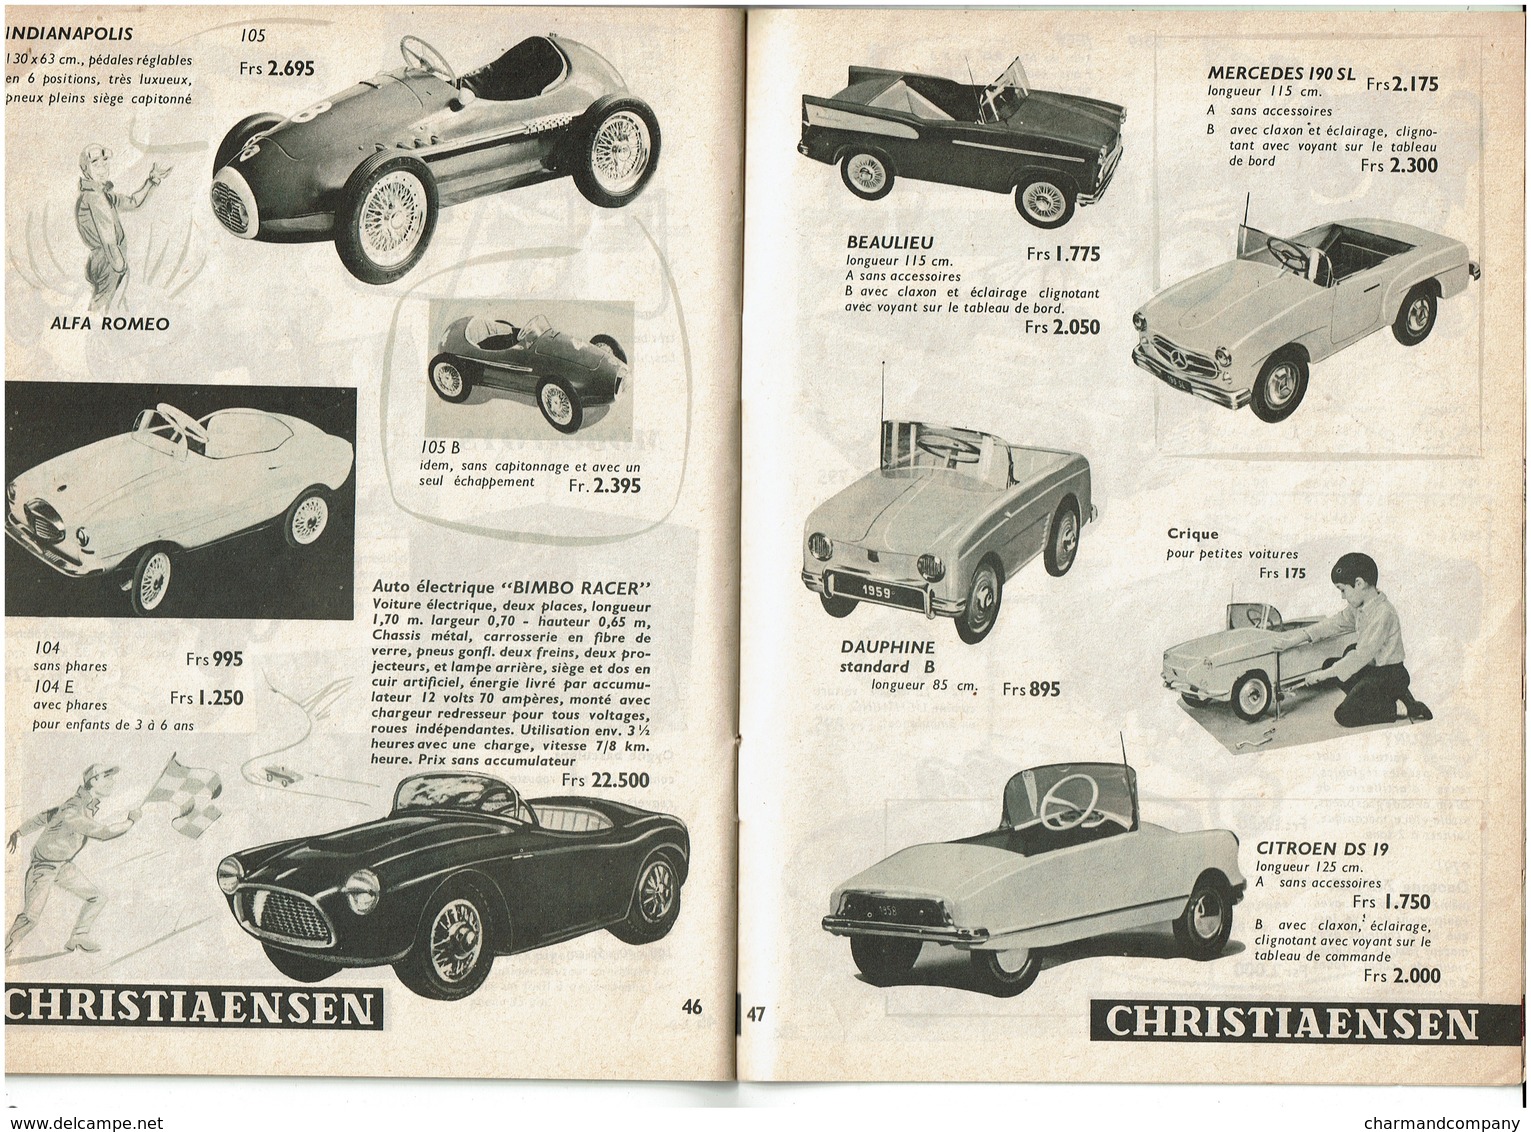 c1965 - Catalogue jeux/jouets Christiaensen - Poupées/Steiff/Dinky/trains/Schuco/ voitures à pédales ...- 12 scans